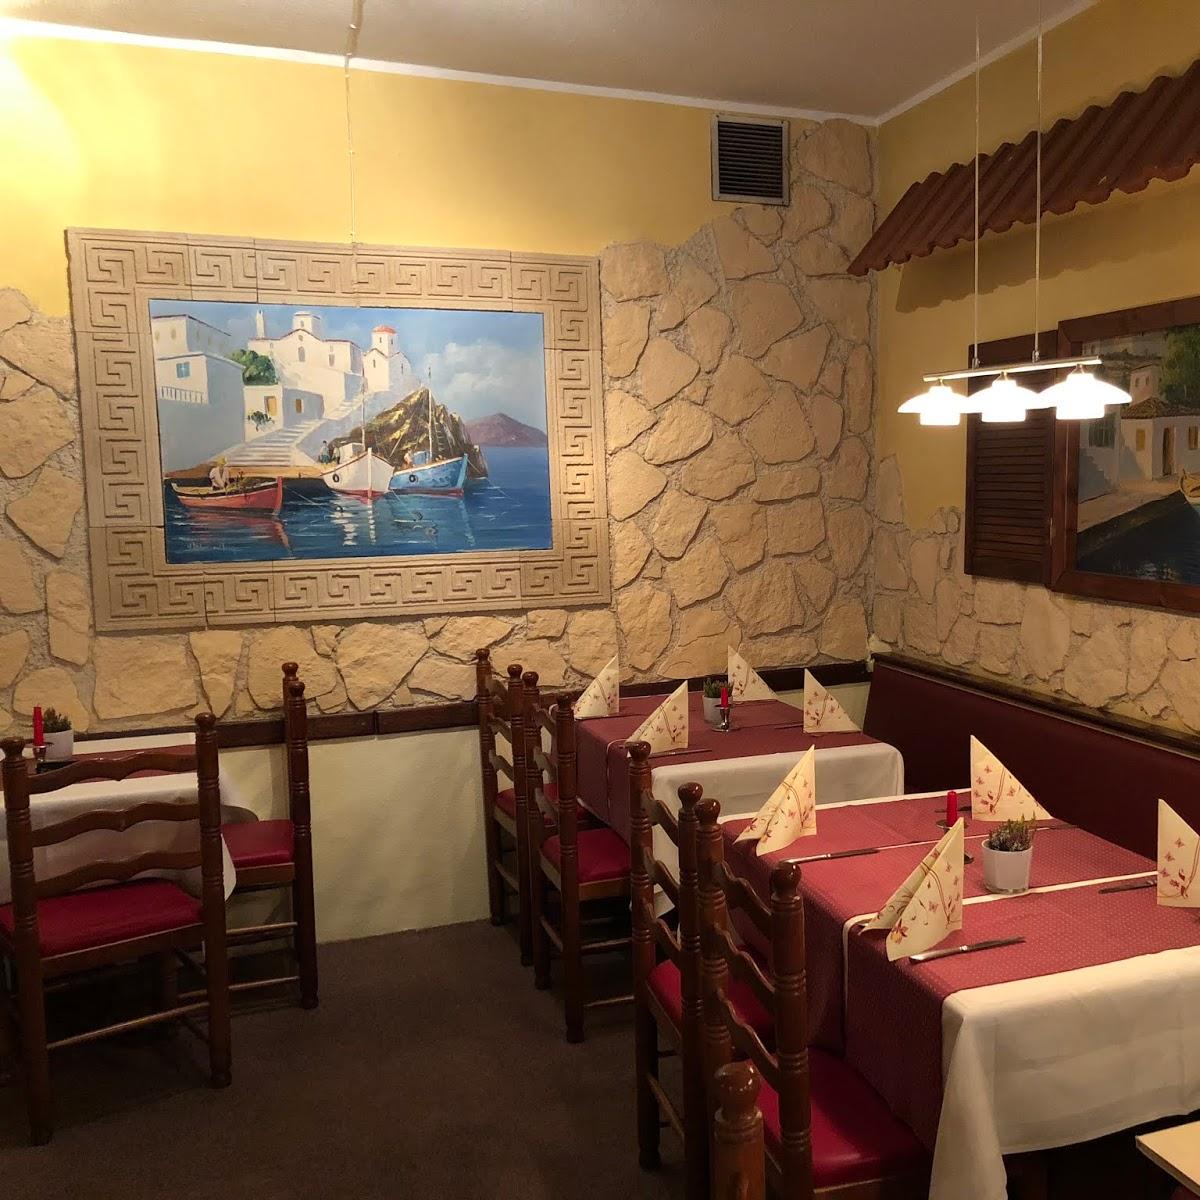 Restaurant "Restaurant Kouros" in Ettlingen